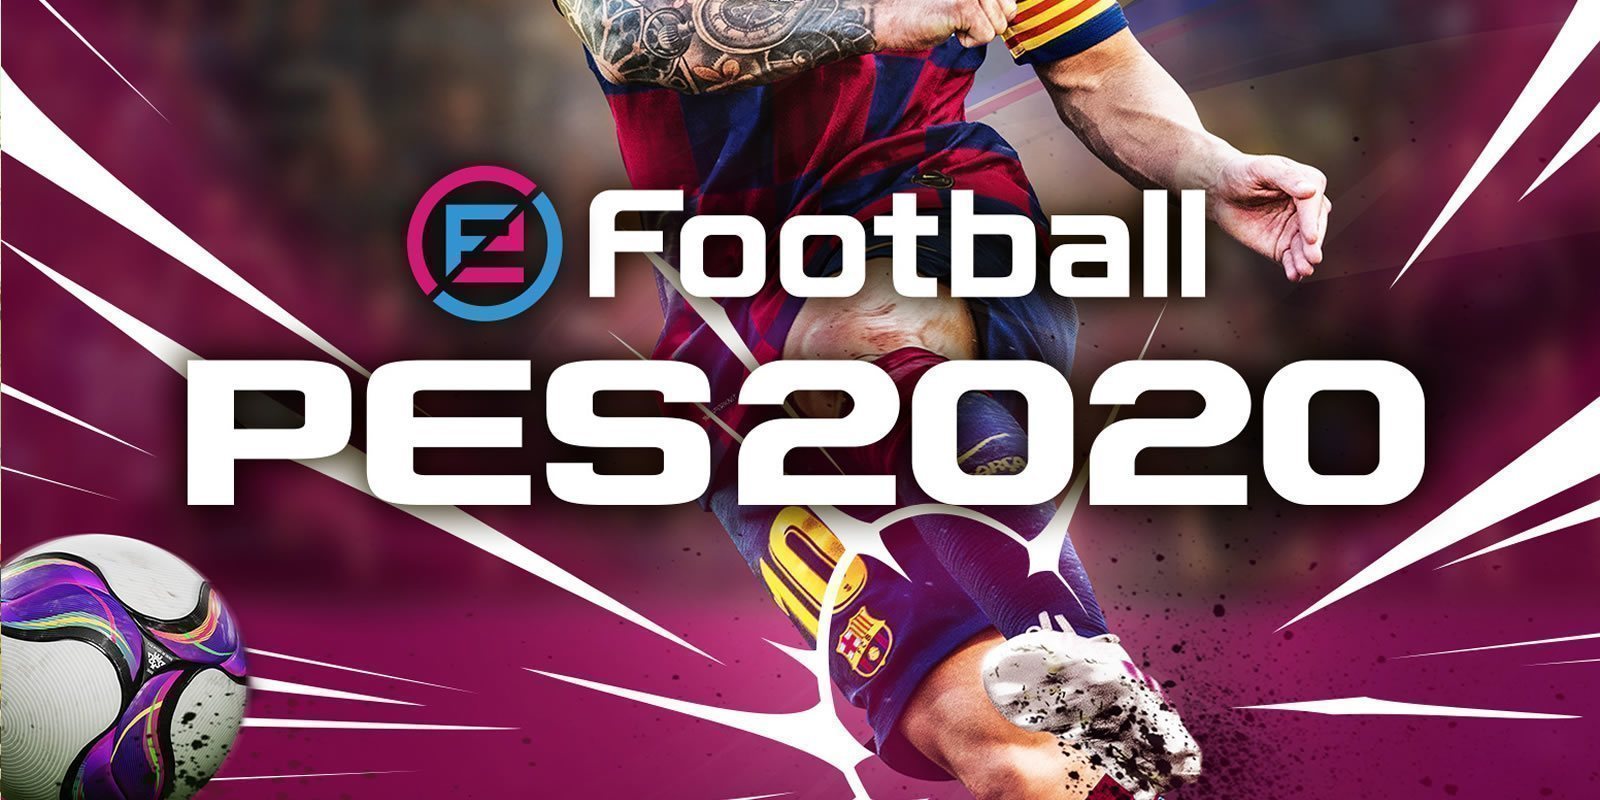 La Juventus será un equipo exclusivo de 'eFootball PES 2020'